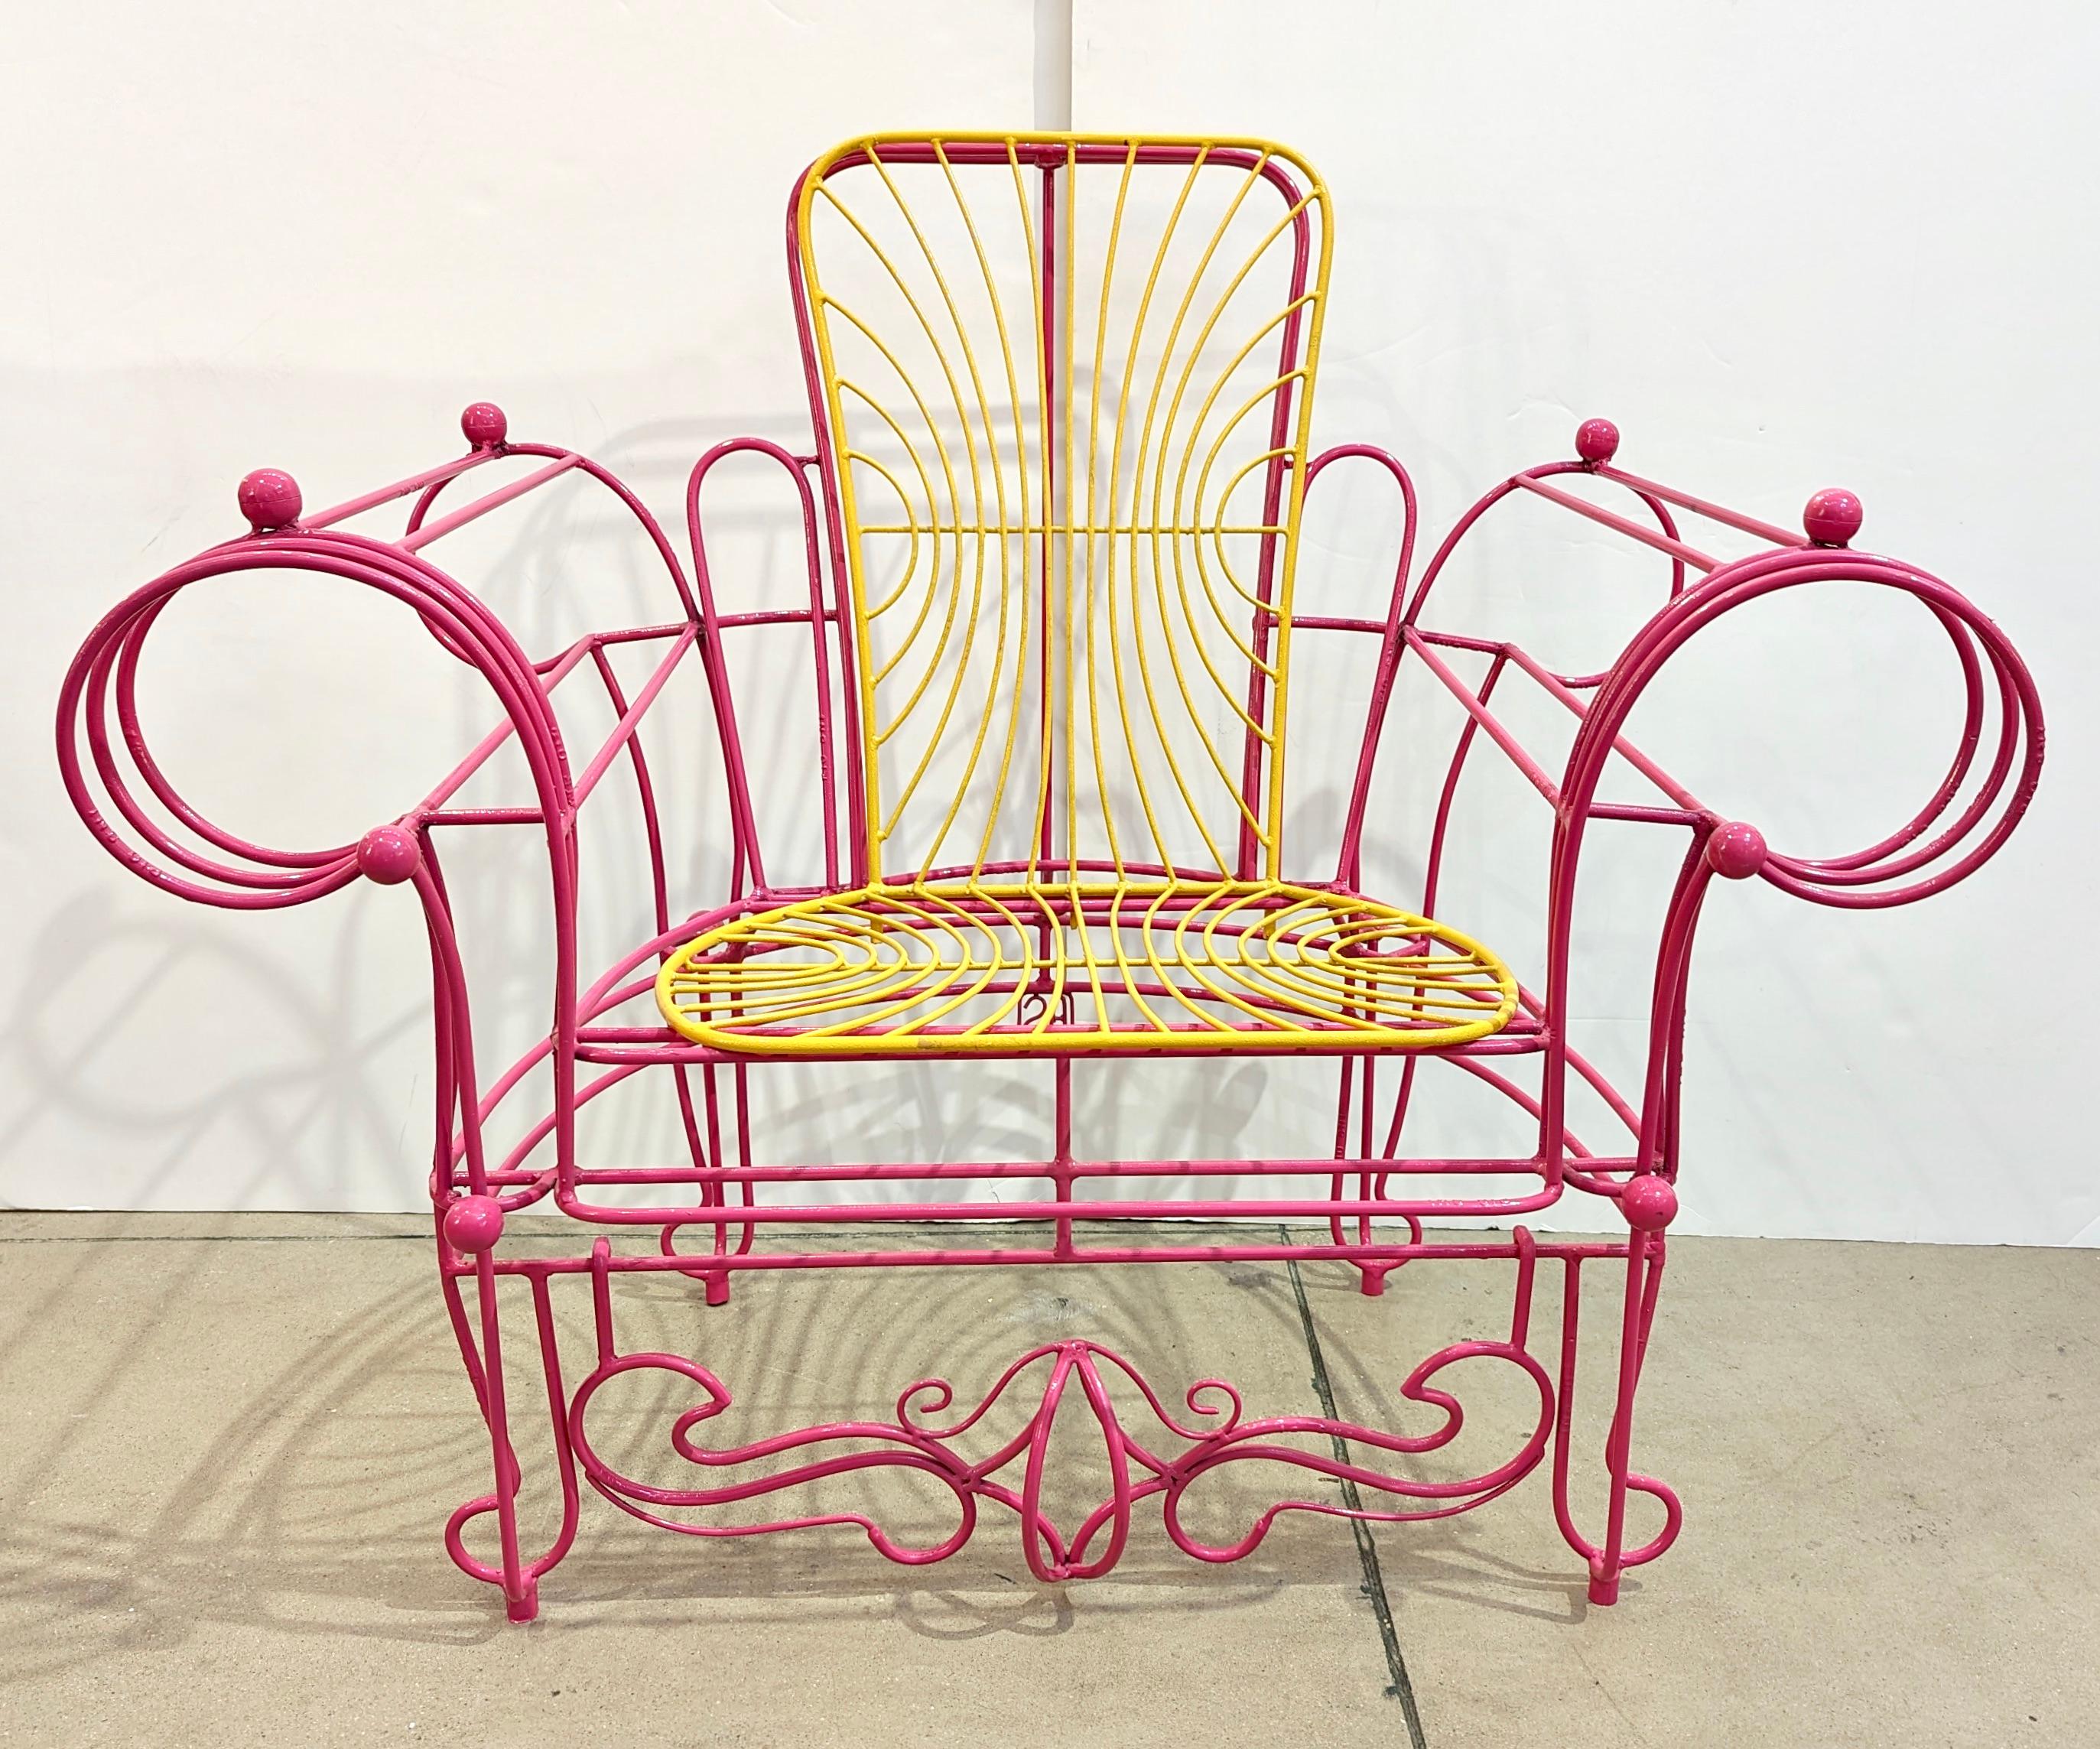 Cette paire de fauteuils amusants est un design moderne organique unique fabriqué et signé par l'artiste italien Anacleto Spazzapan (Luino, Italie - 1943). Très fonctionnels pour leur utilisation ludique à l'intérieur comme à l'extérieur. La